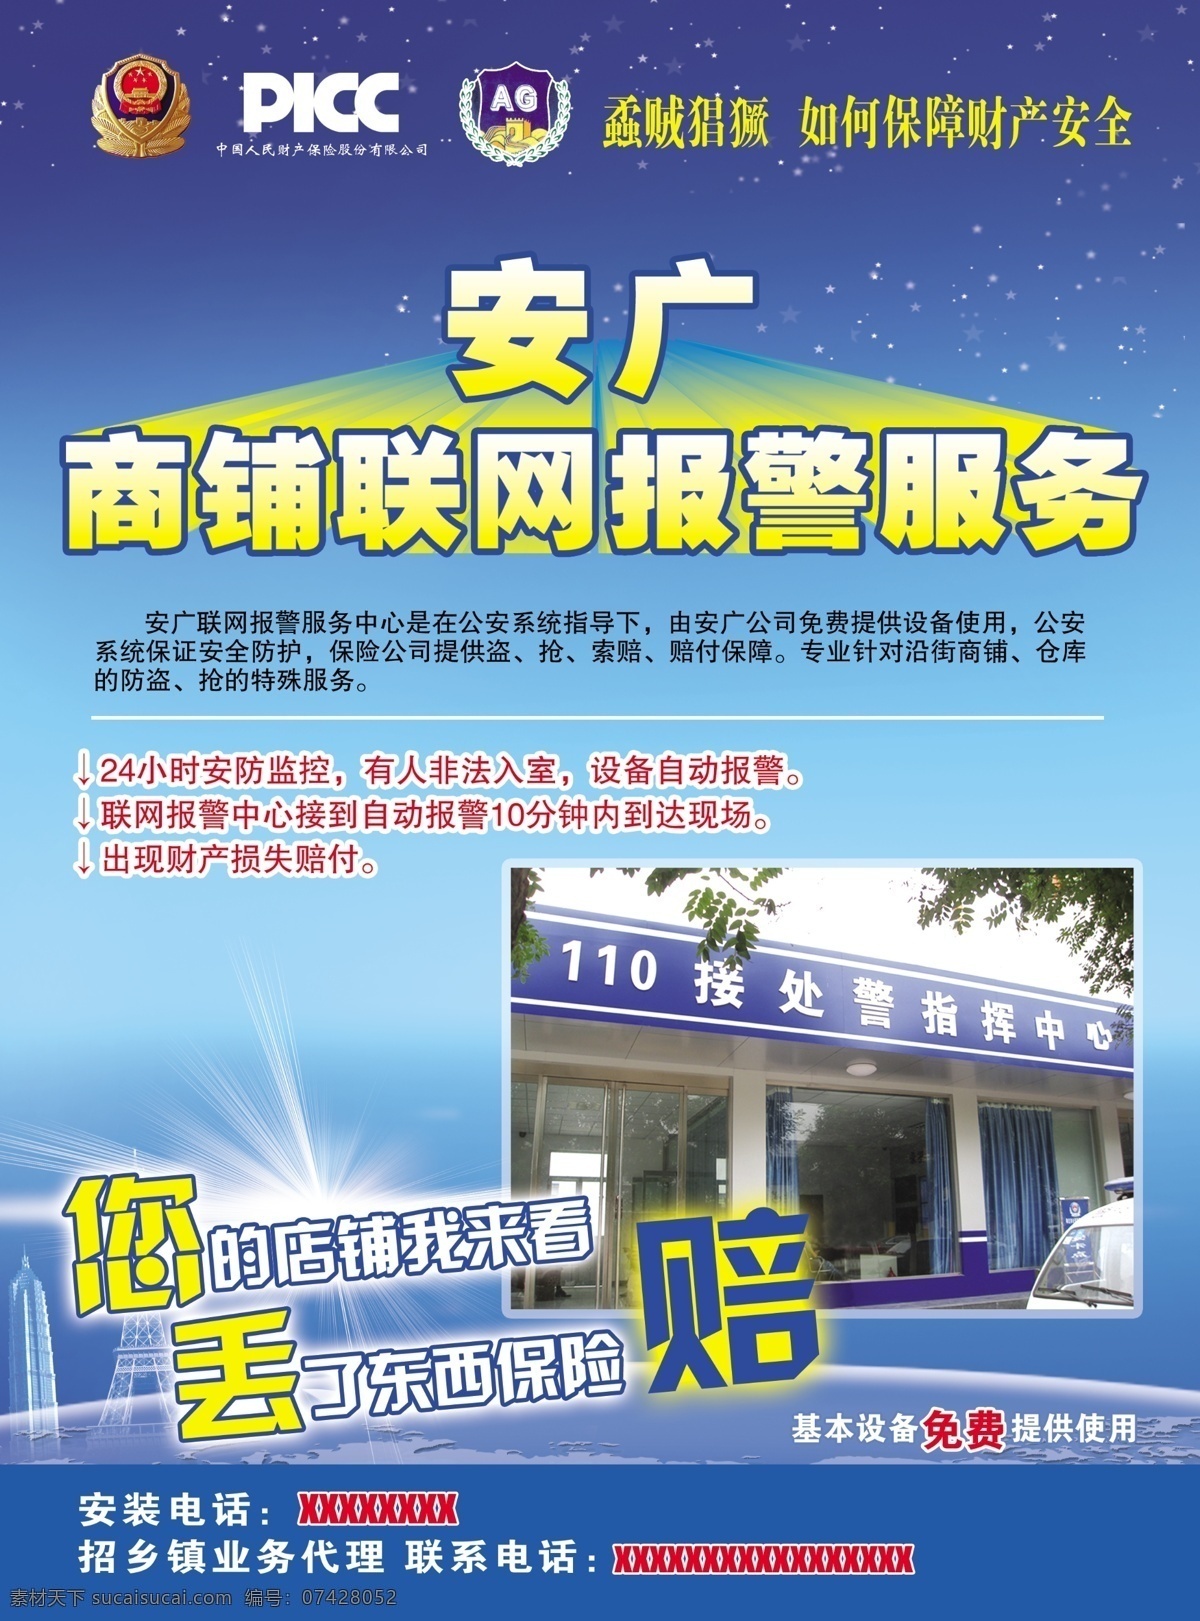 安 广 联网 宣传单 安广联网 联网报警 picc 警官局 电子海报 蓝色海报 dm宣传单